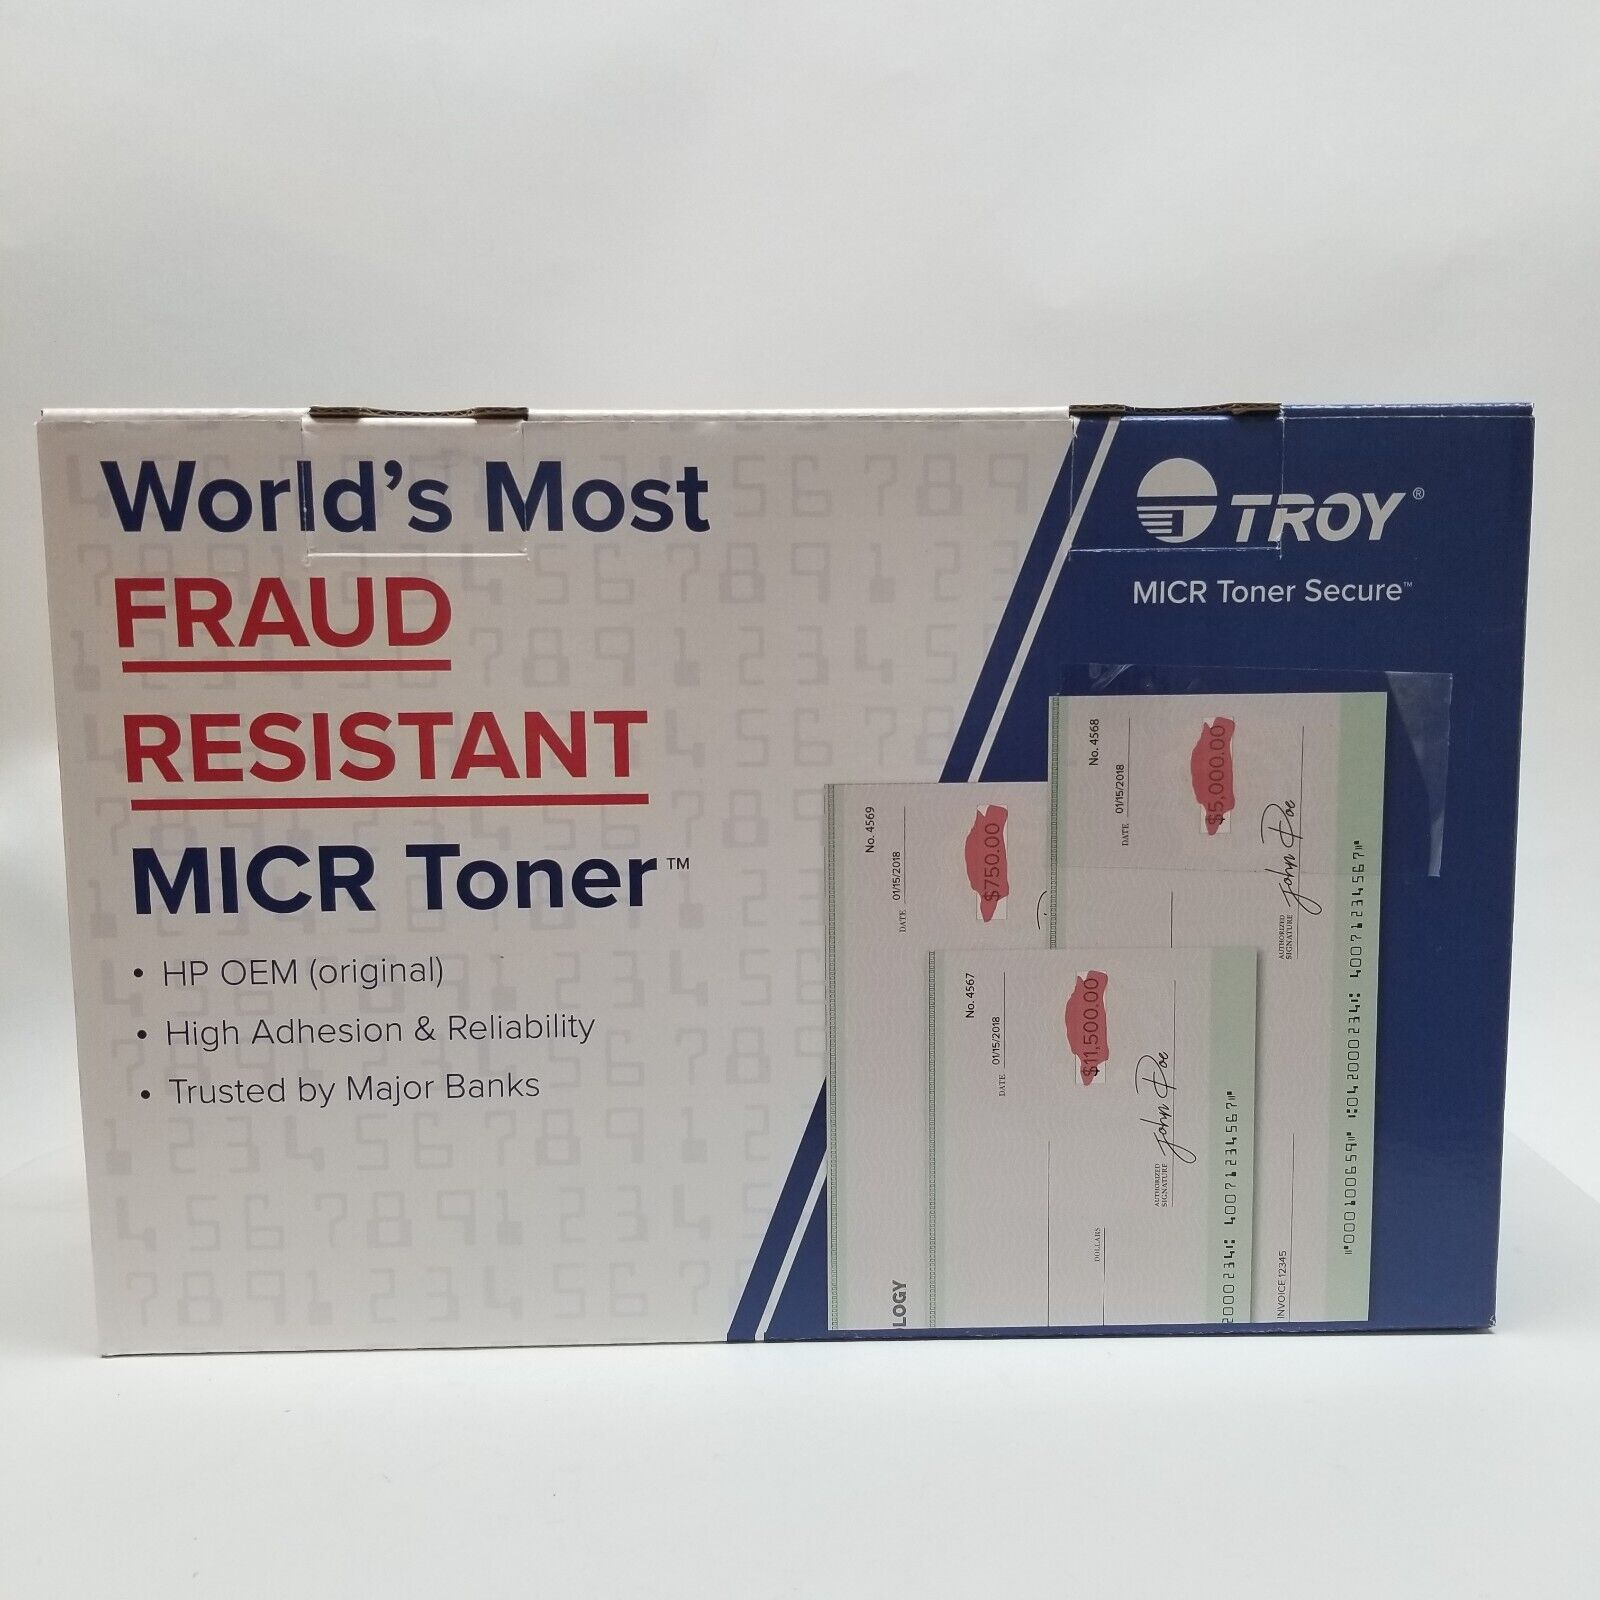 TROY Fraud Resistant MICR Toner Secure Cartridge HP OEM M507/M528 02-81680-001